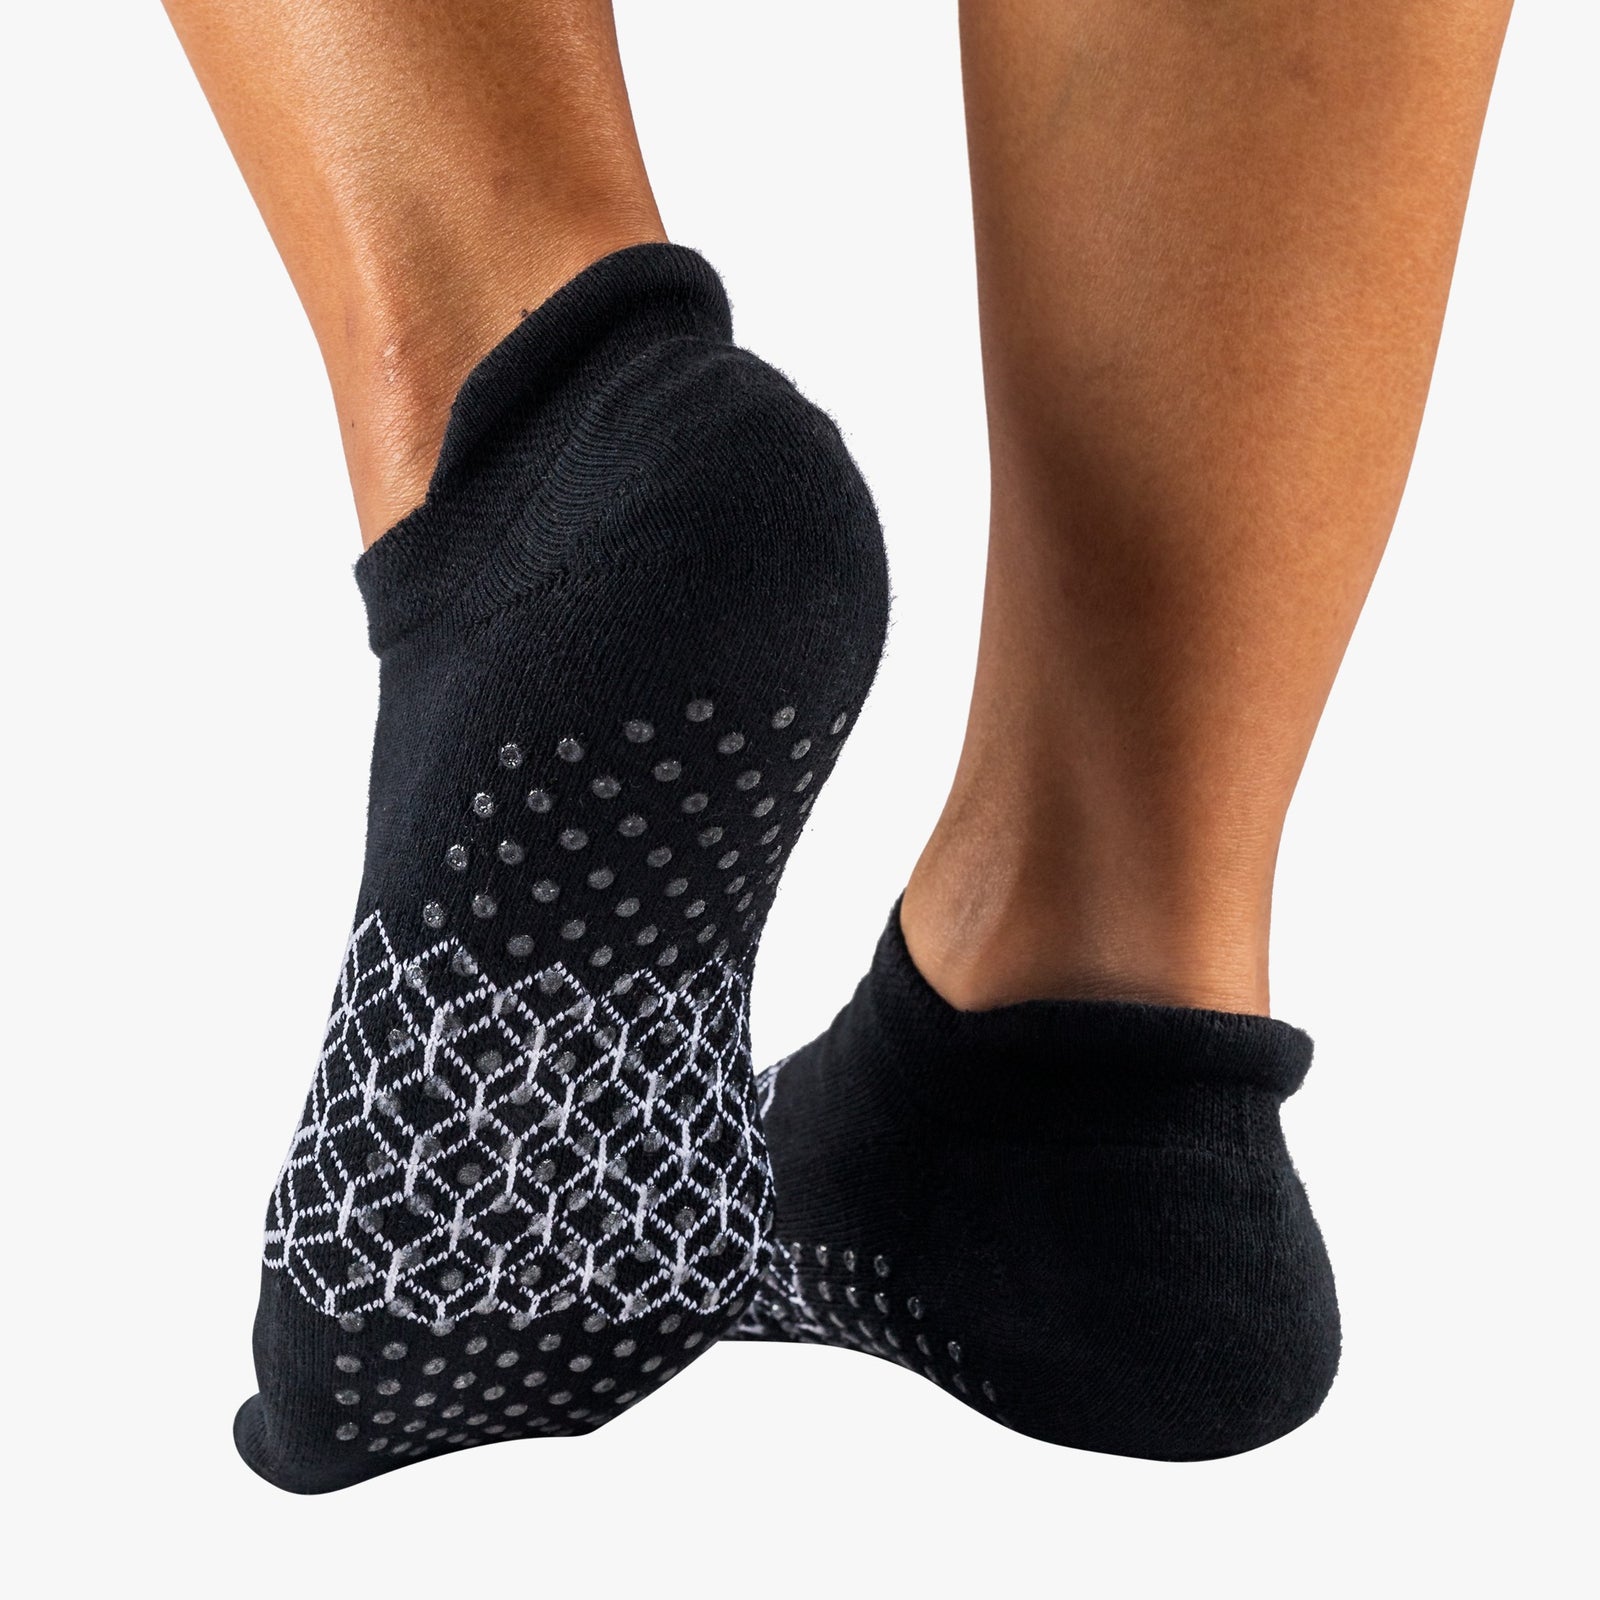 eco-friendly socks for yoga, pilates, running